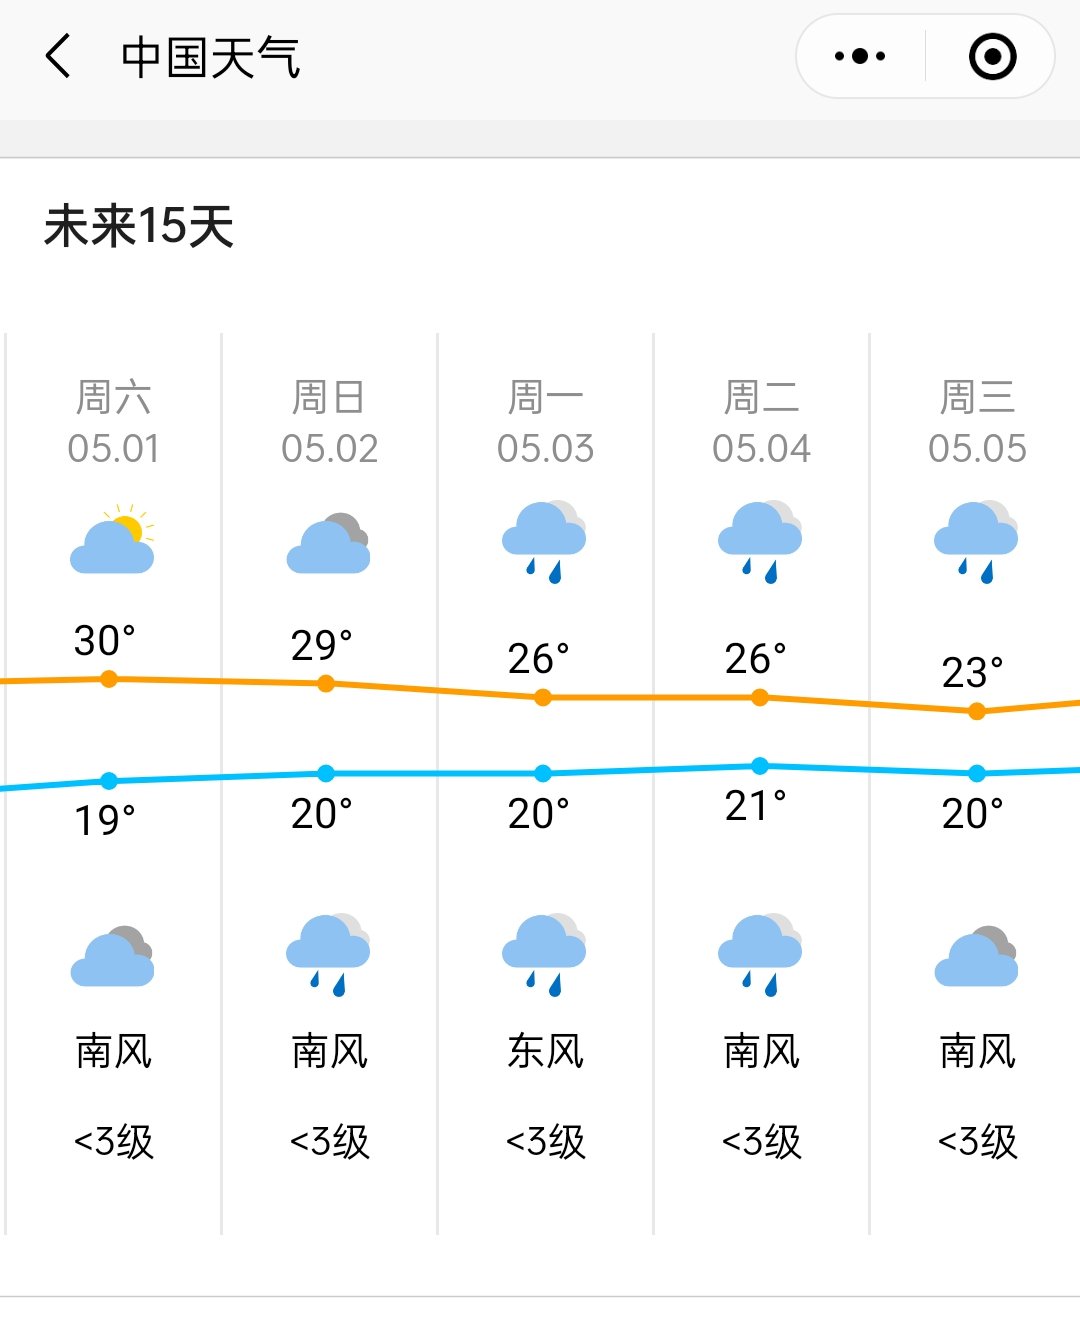 2021长沙五一天气预报:   根据中国气象天气预报,长沙五一期间天气